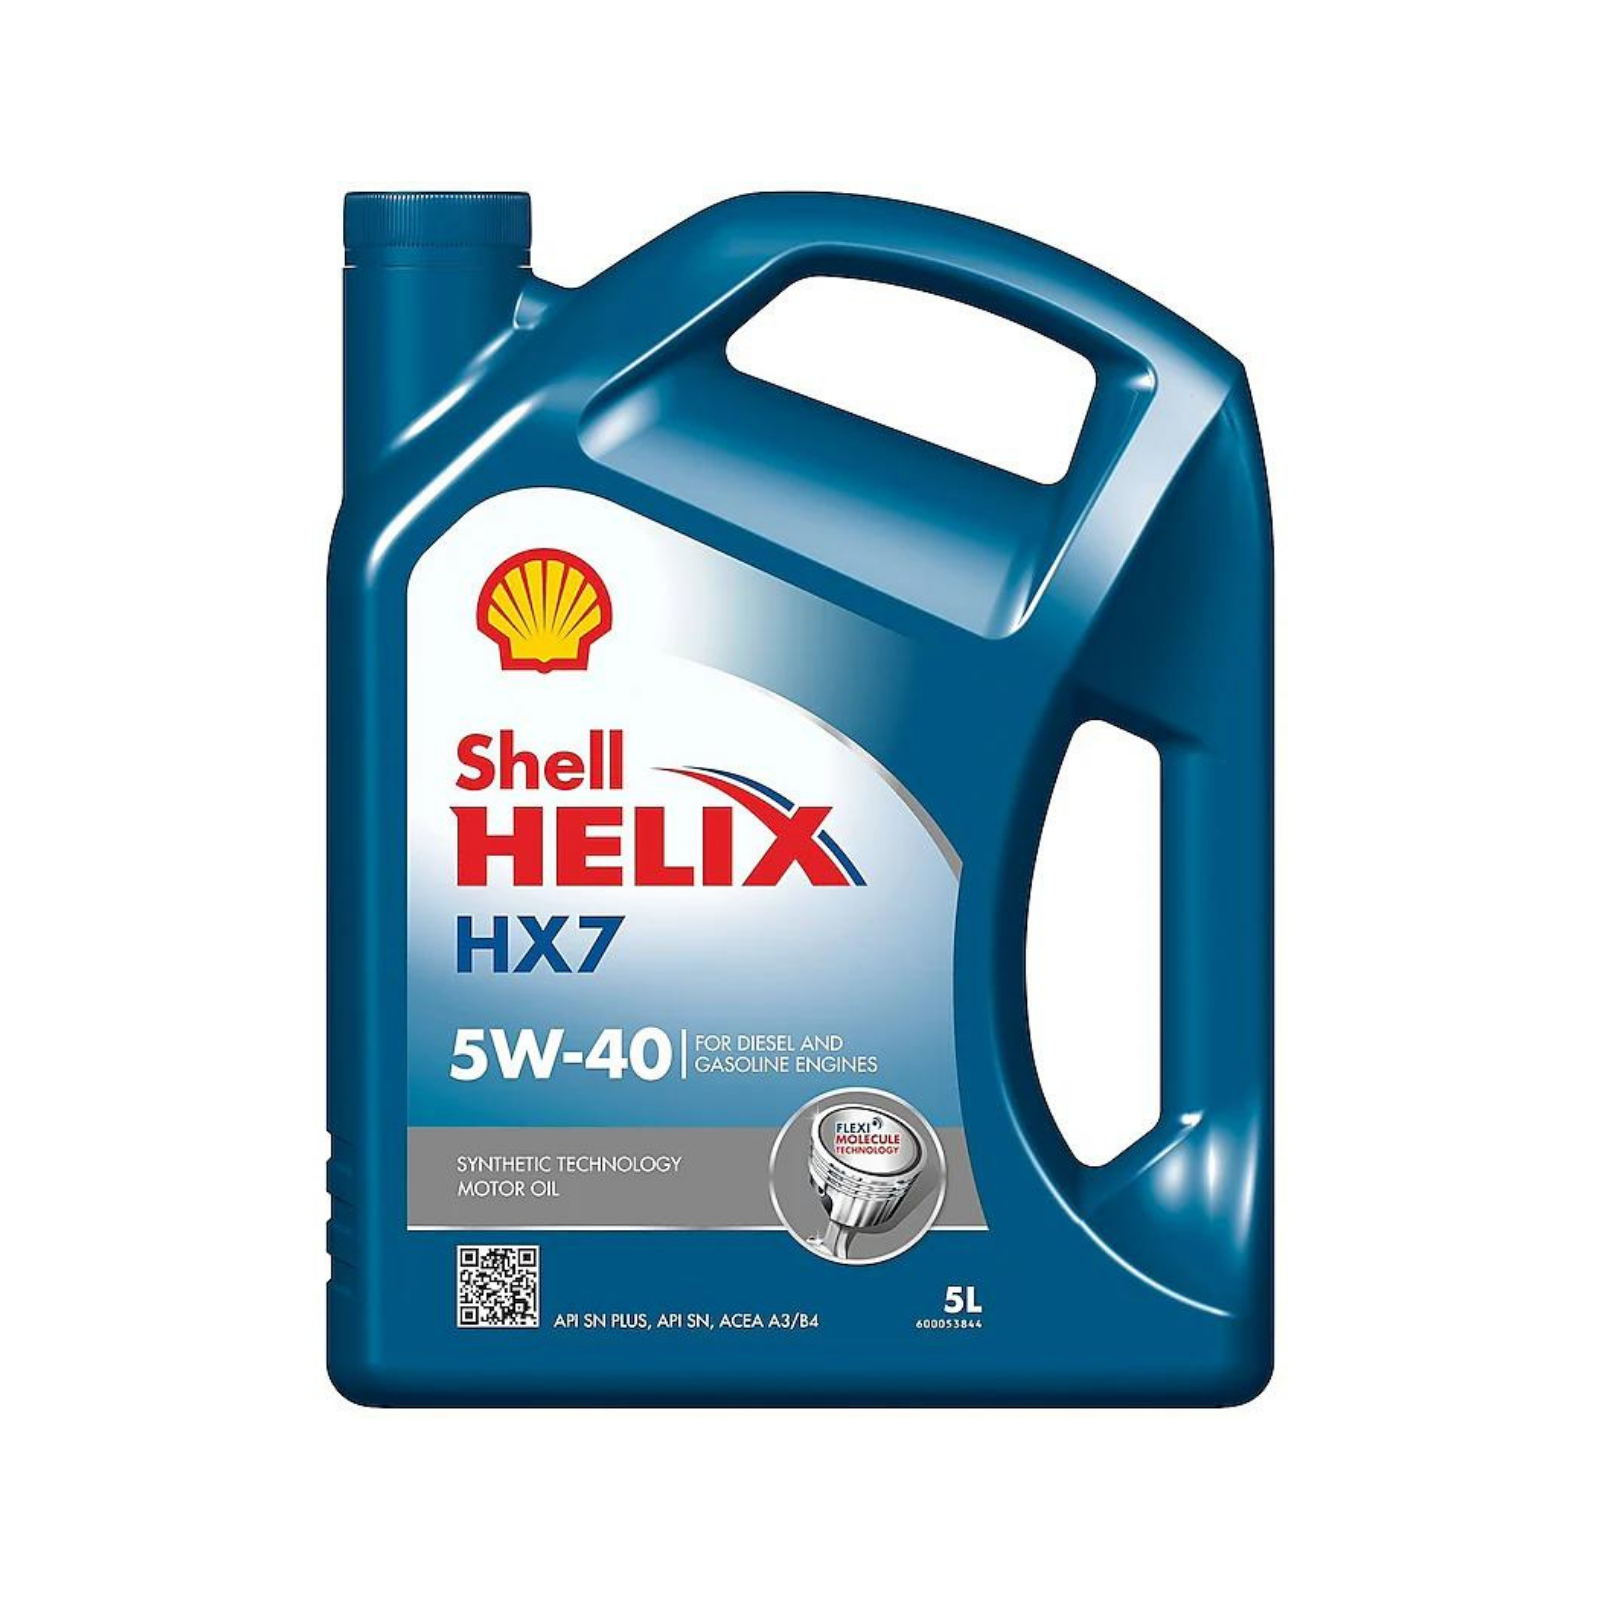 Shell HX7 5W-40 SN+ 5L Engine Oil